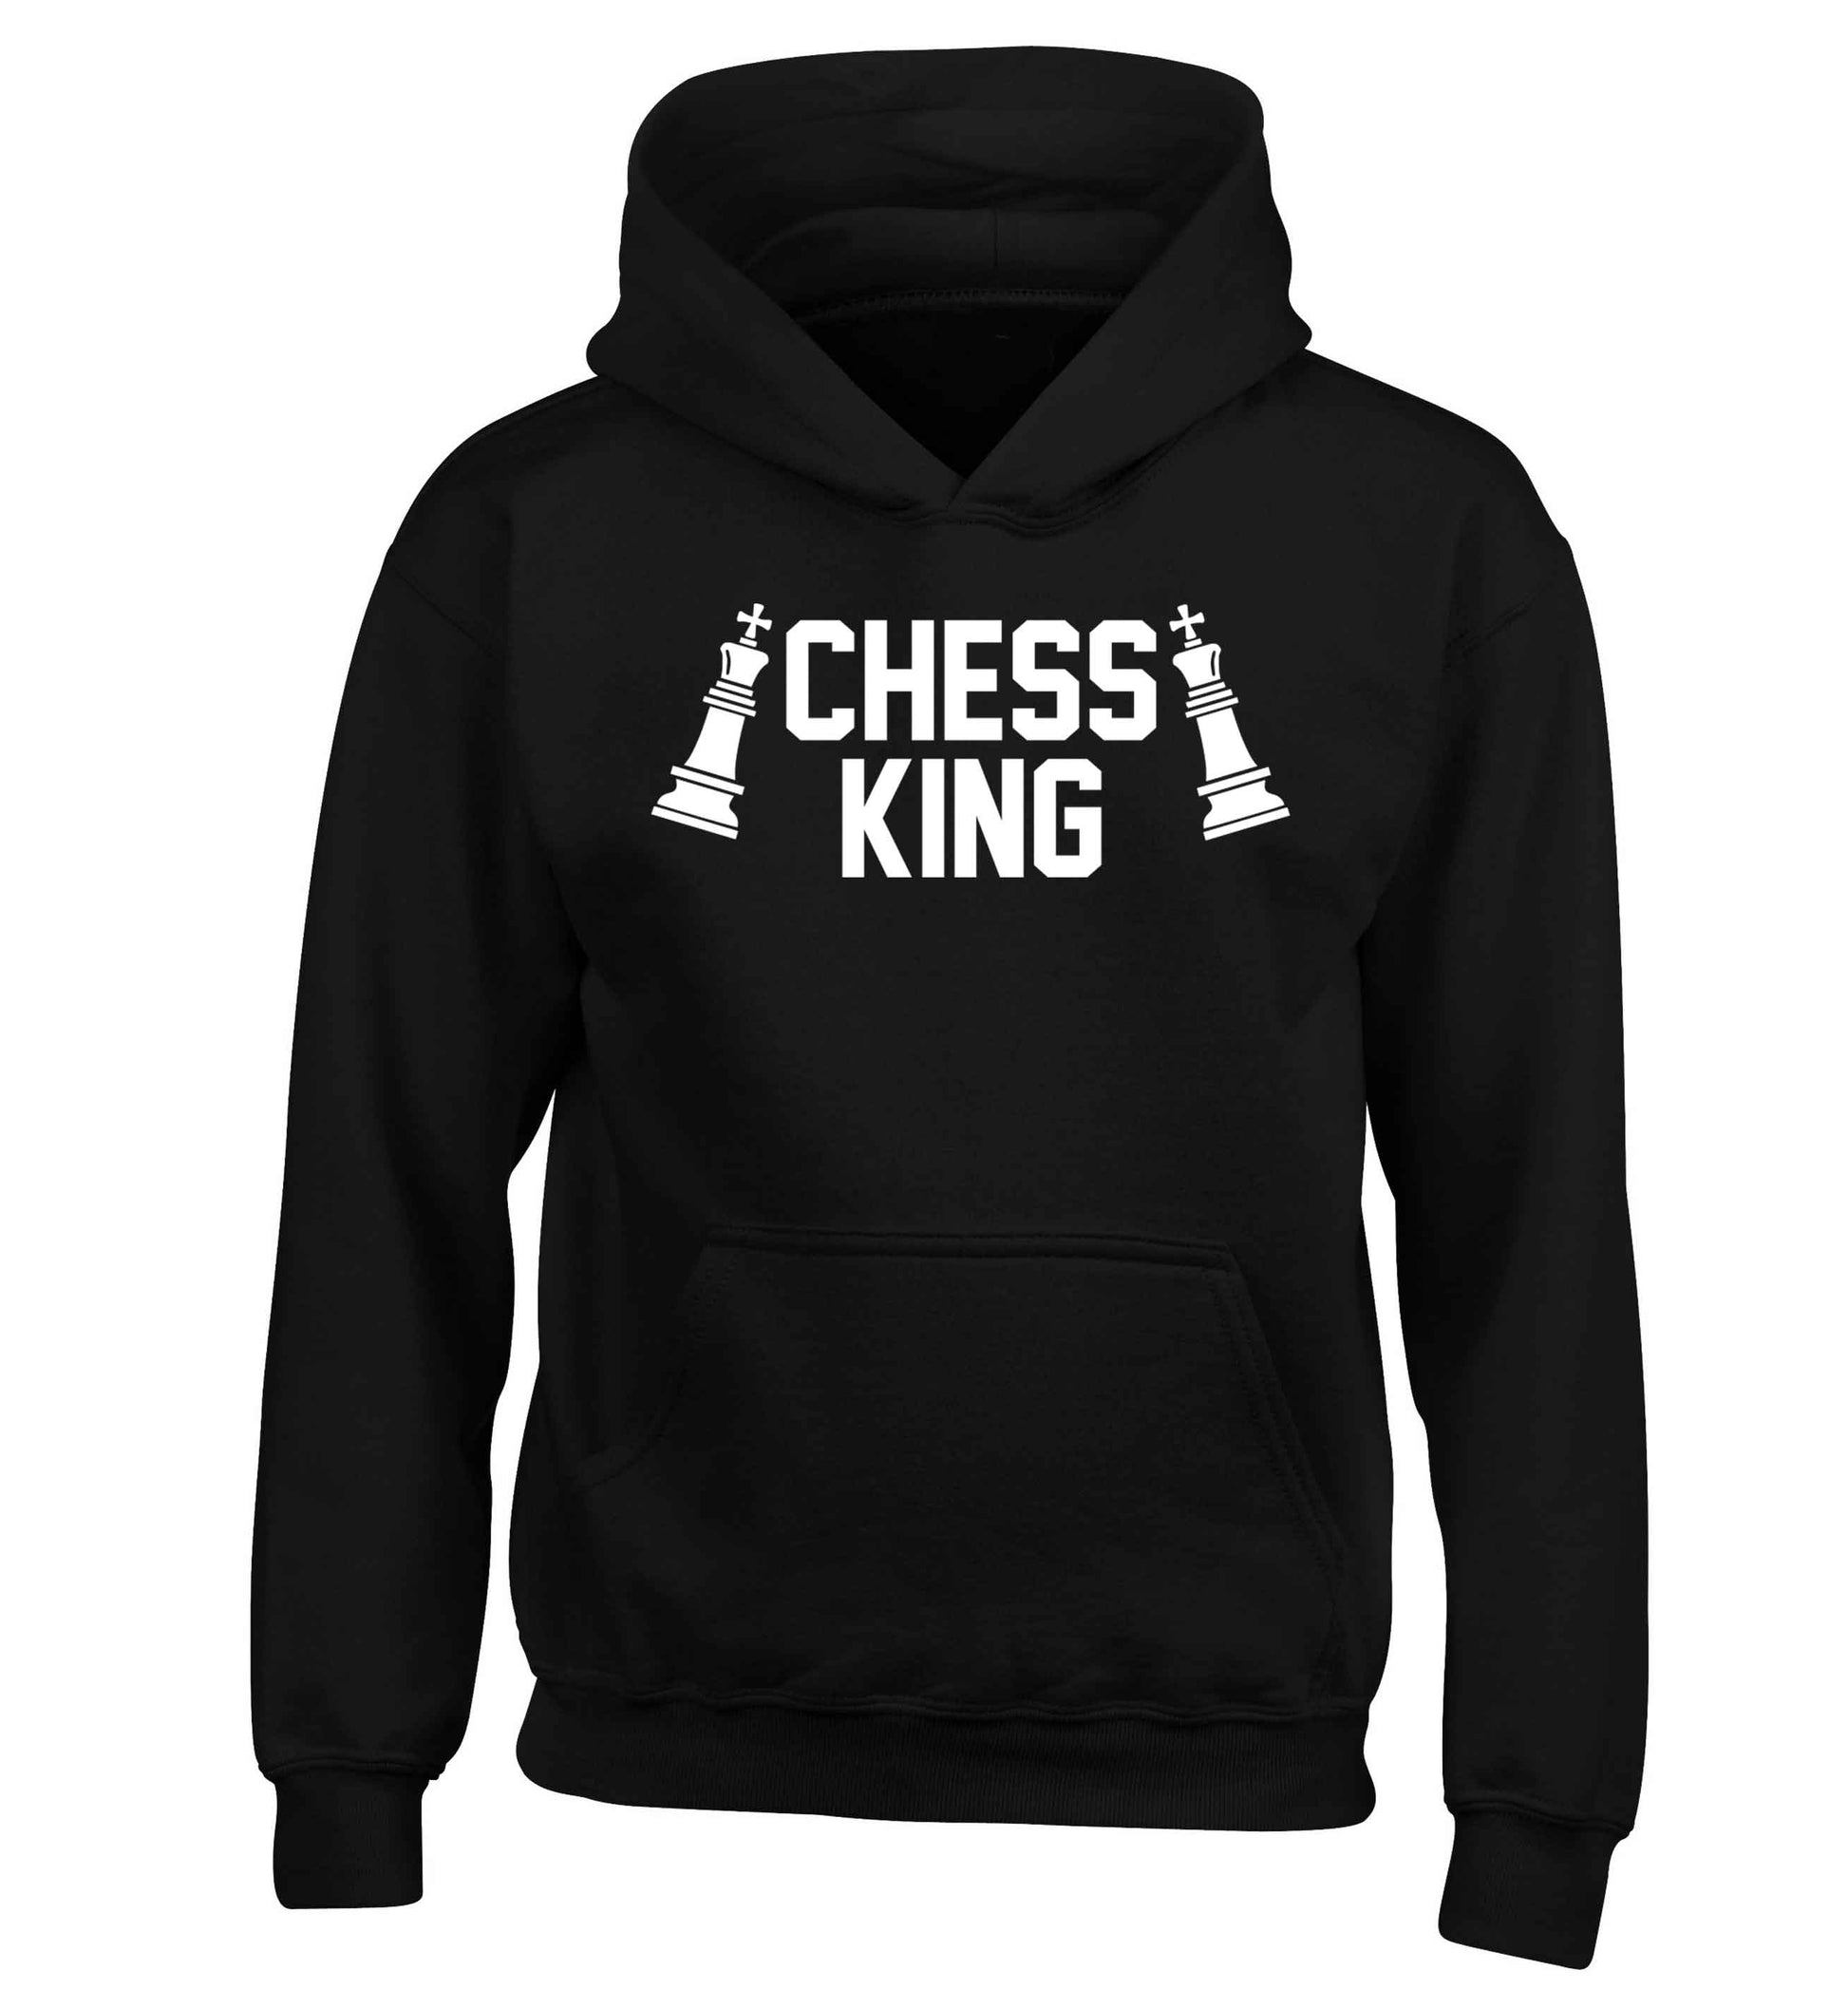 Chess king children's black hoodie 12-13 Years